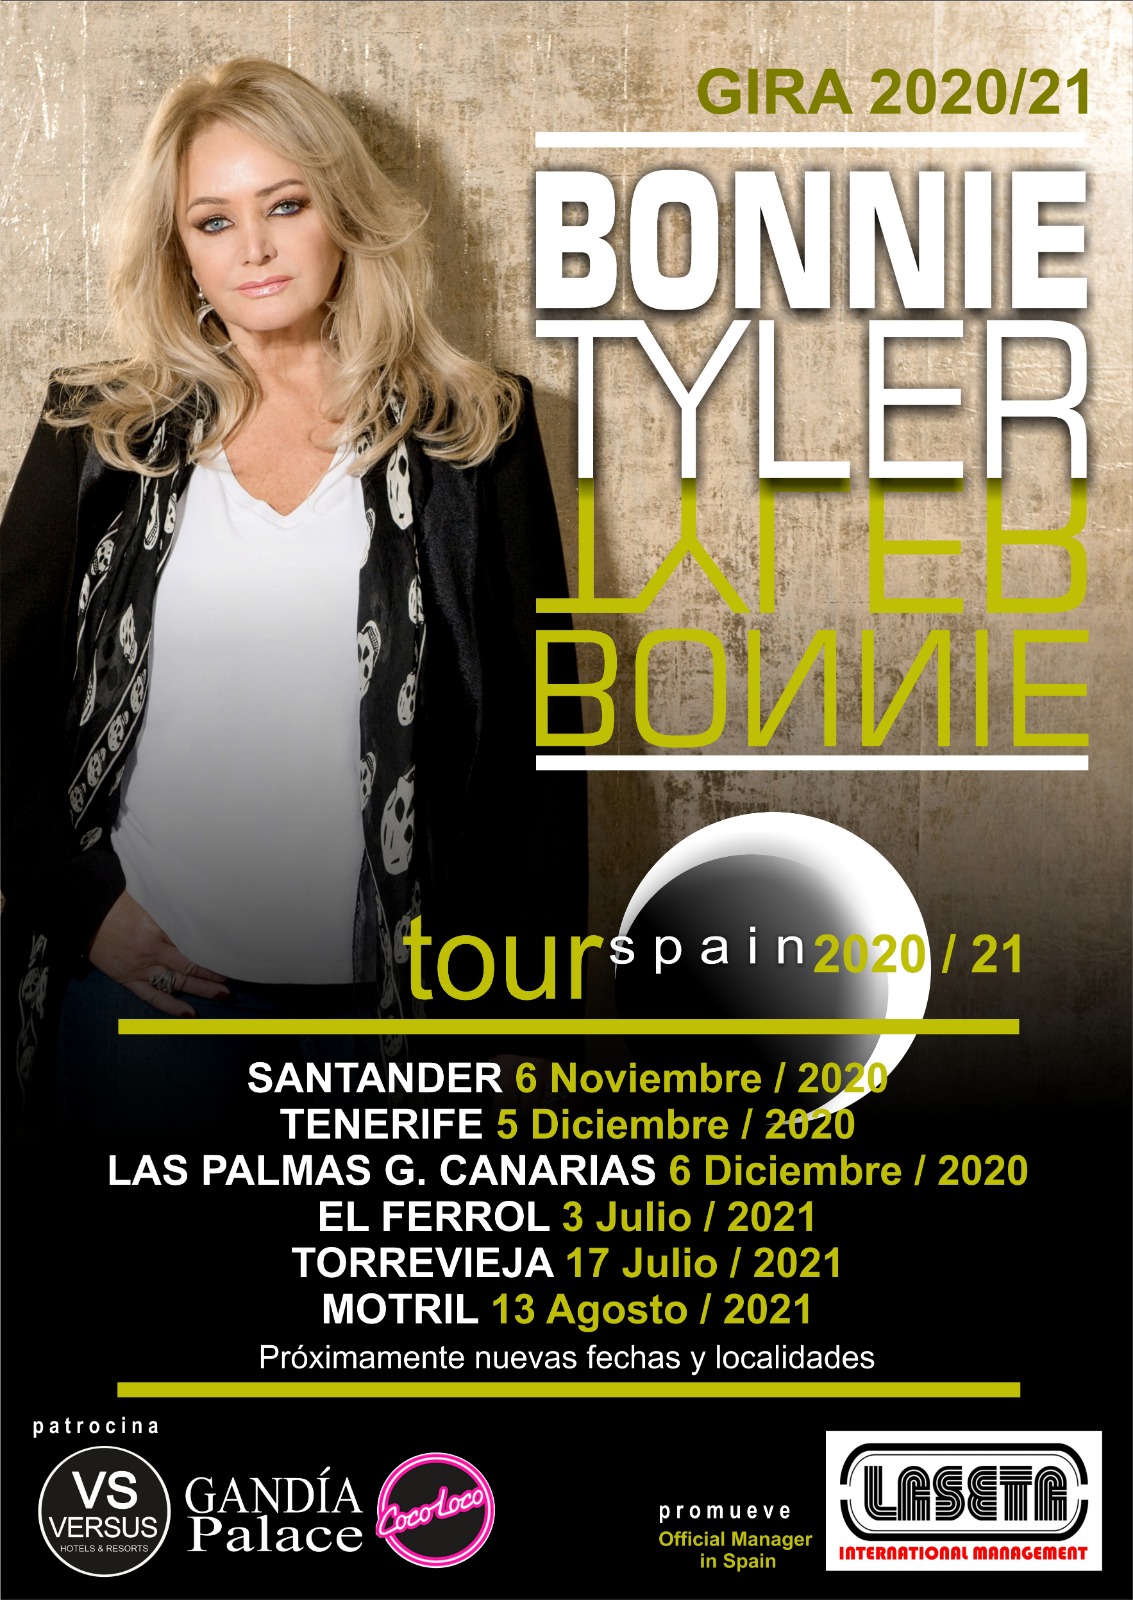 Bonnie Tyler en España Gira 2020